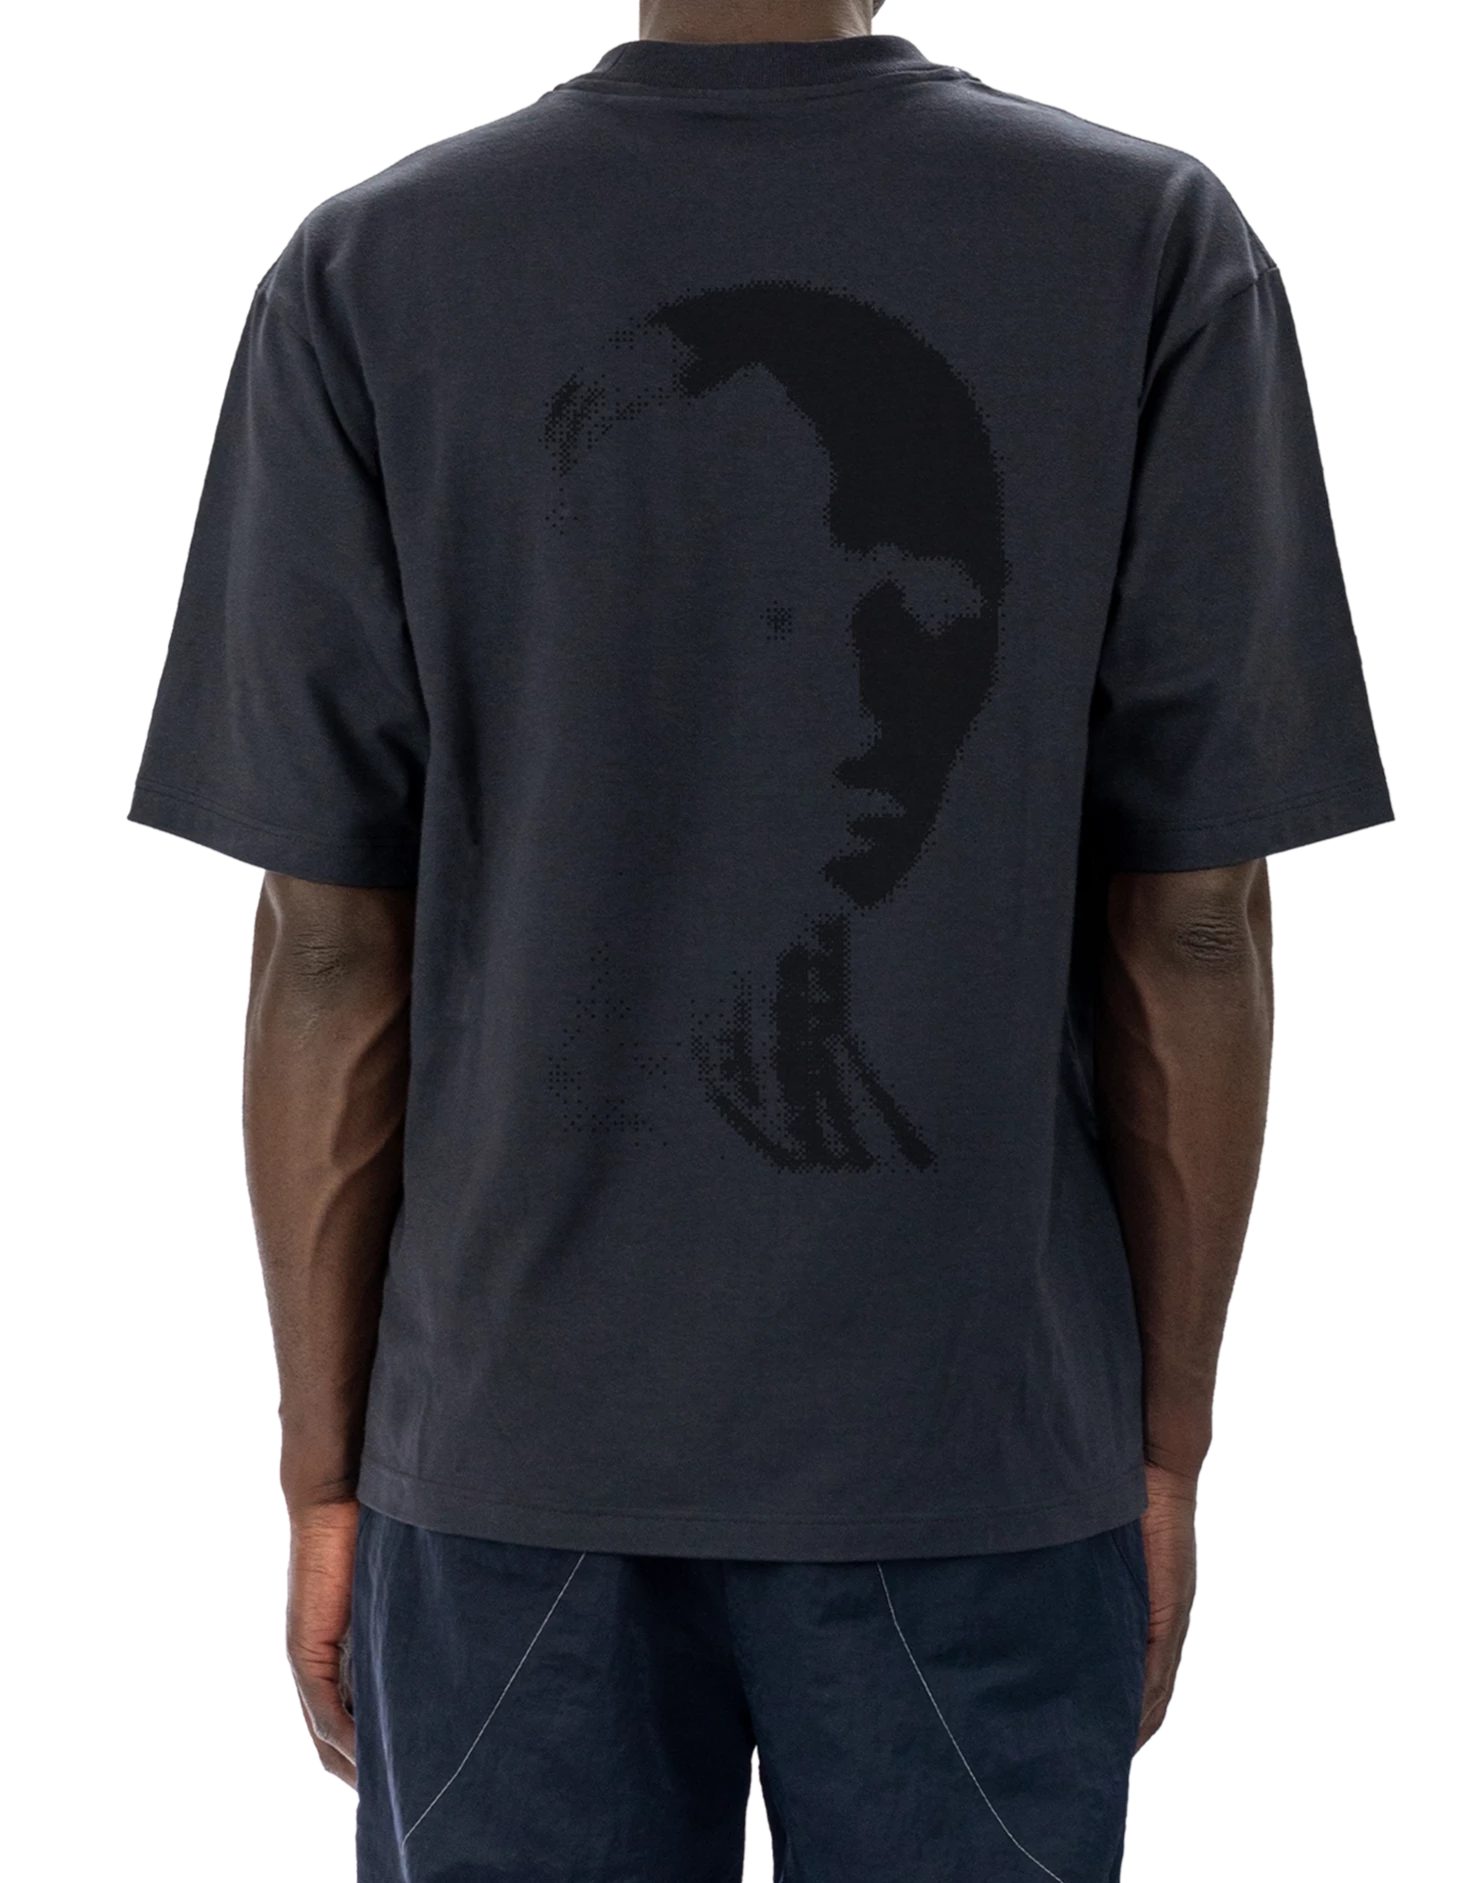 OPR® Bionic T-shirt